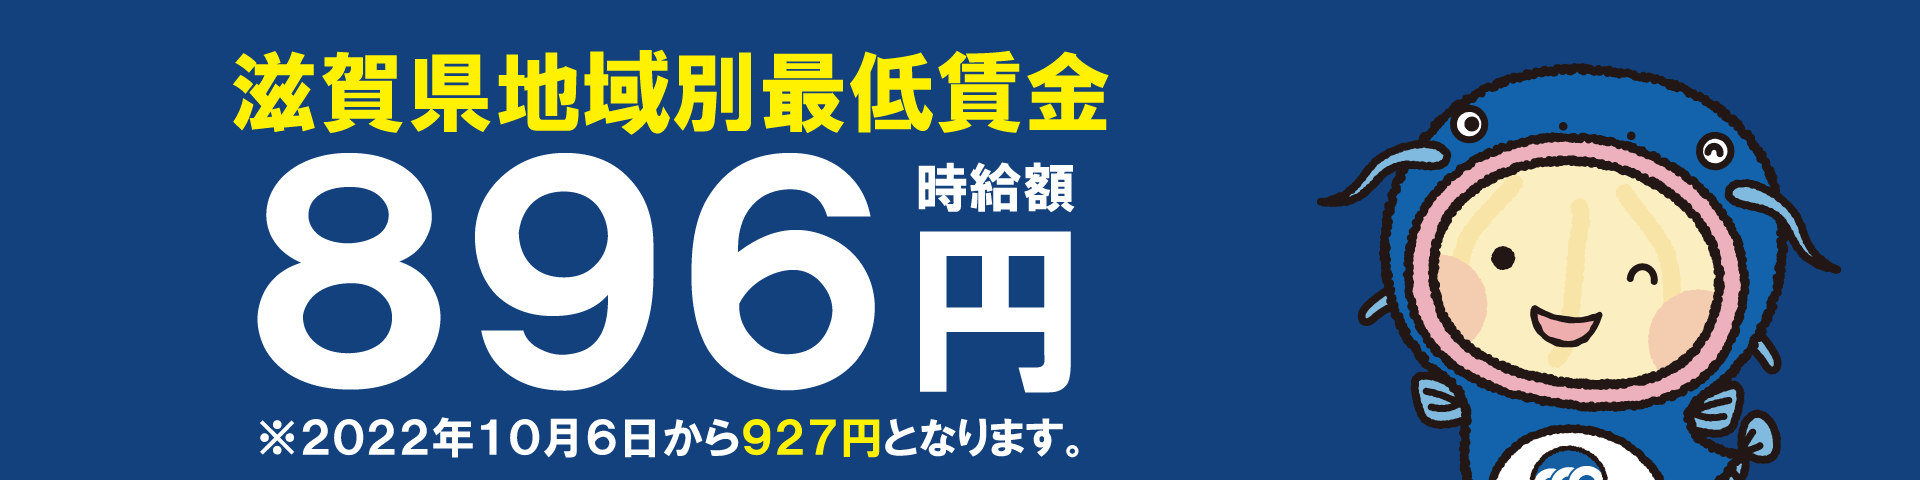 滋賀県最低賃金,時給額927円,2022年10月6日発効,最賃,地域別,連合滋賀,労働組合